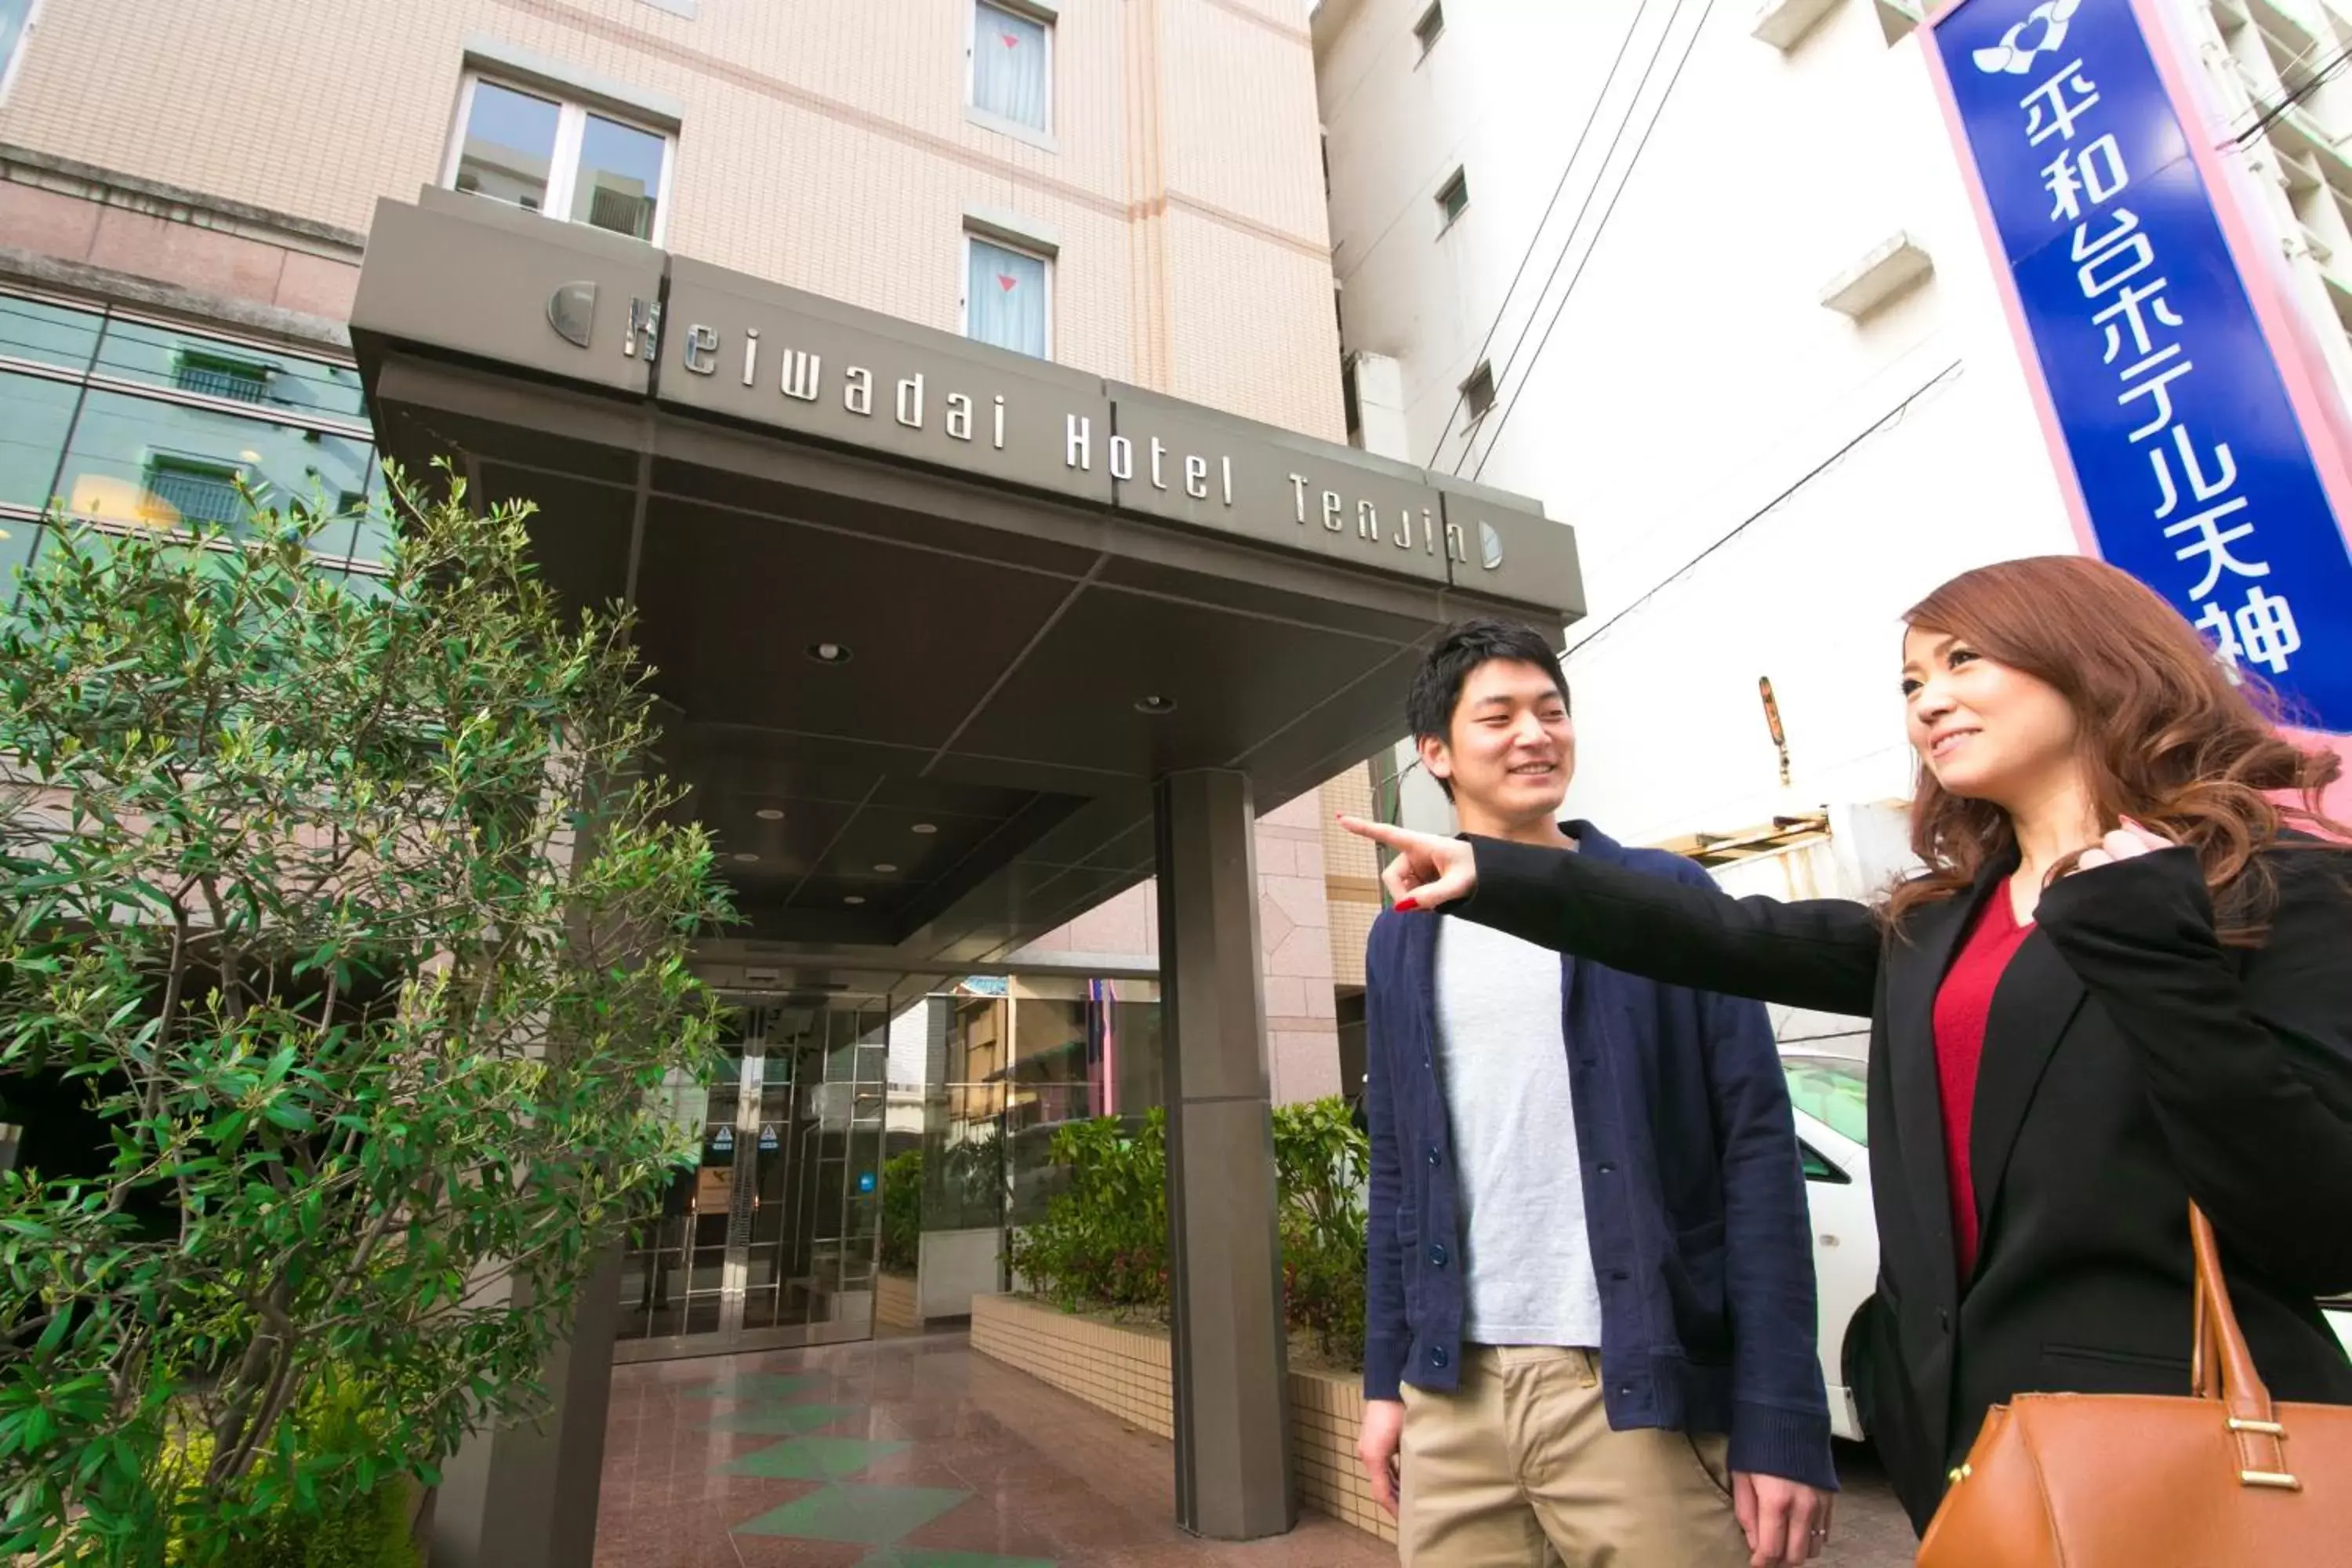 Facade/entrance in Heiwadai Hotel Tenjin